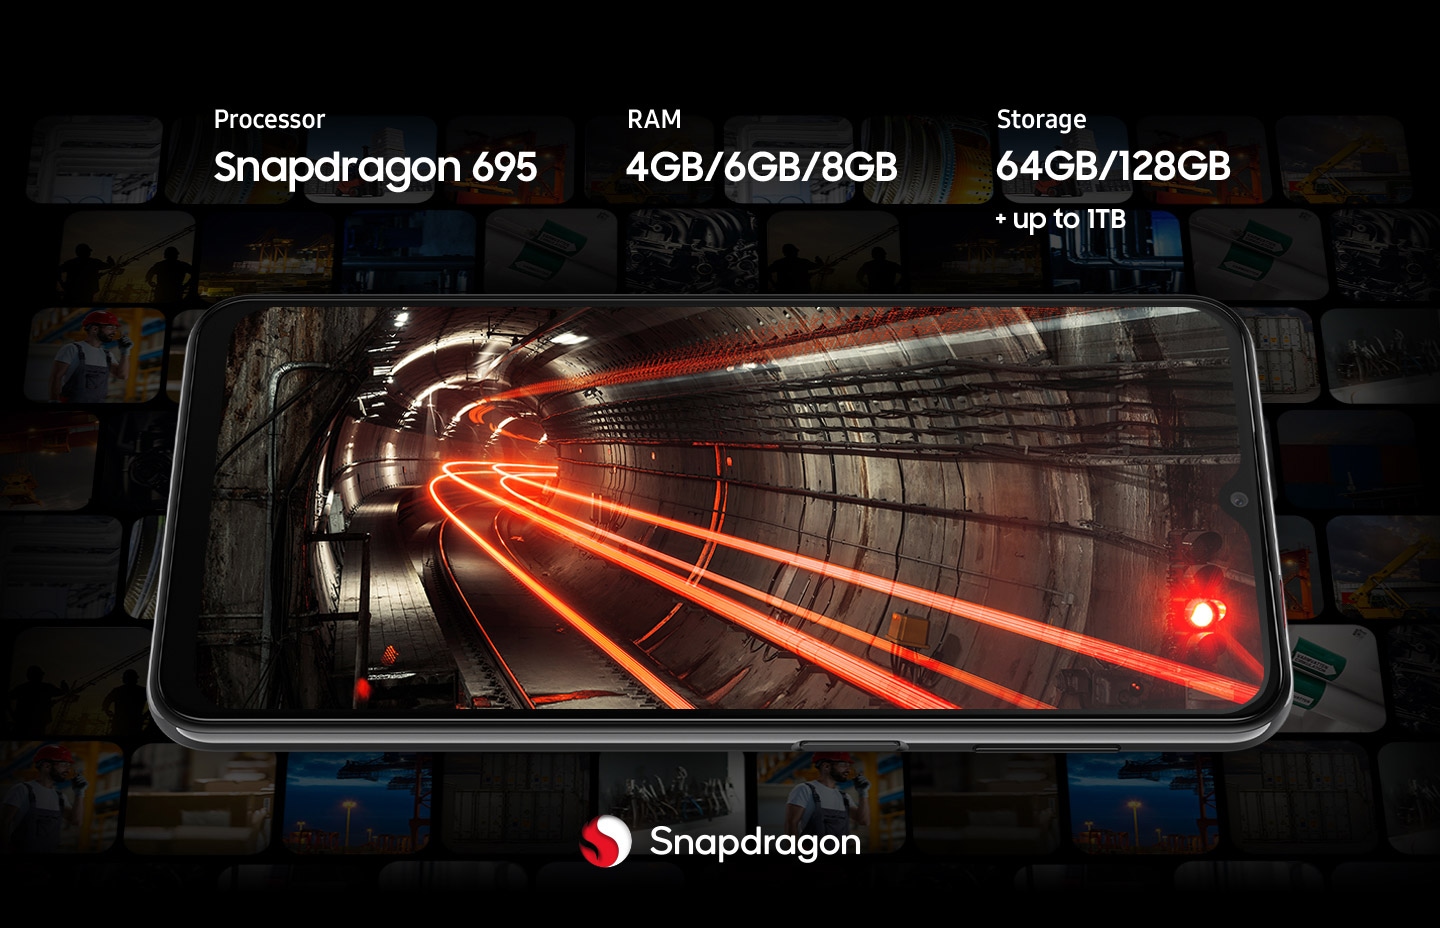 Pozadina Galaxy A23 5G prikazuje podzemni tunel kroz koji prolaze crvena svjetla. Oko pametnog telefona su izblijedjele sličice različitog sadržaja. Uređaj nudi Snapdragon 695 procesor.